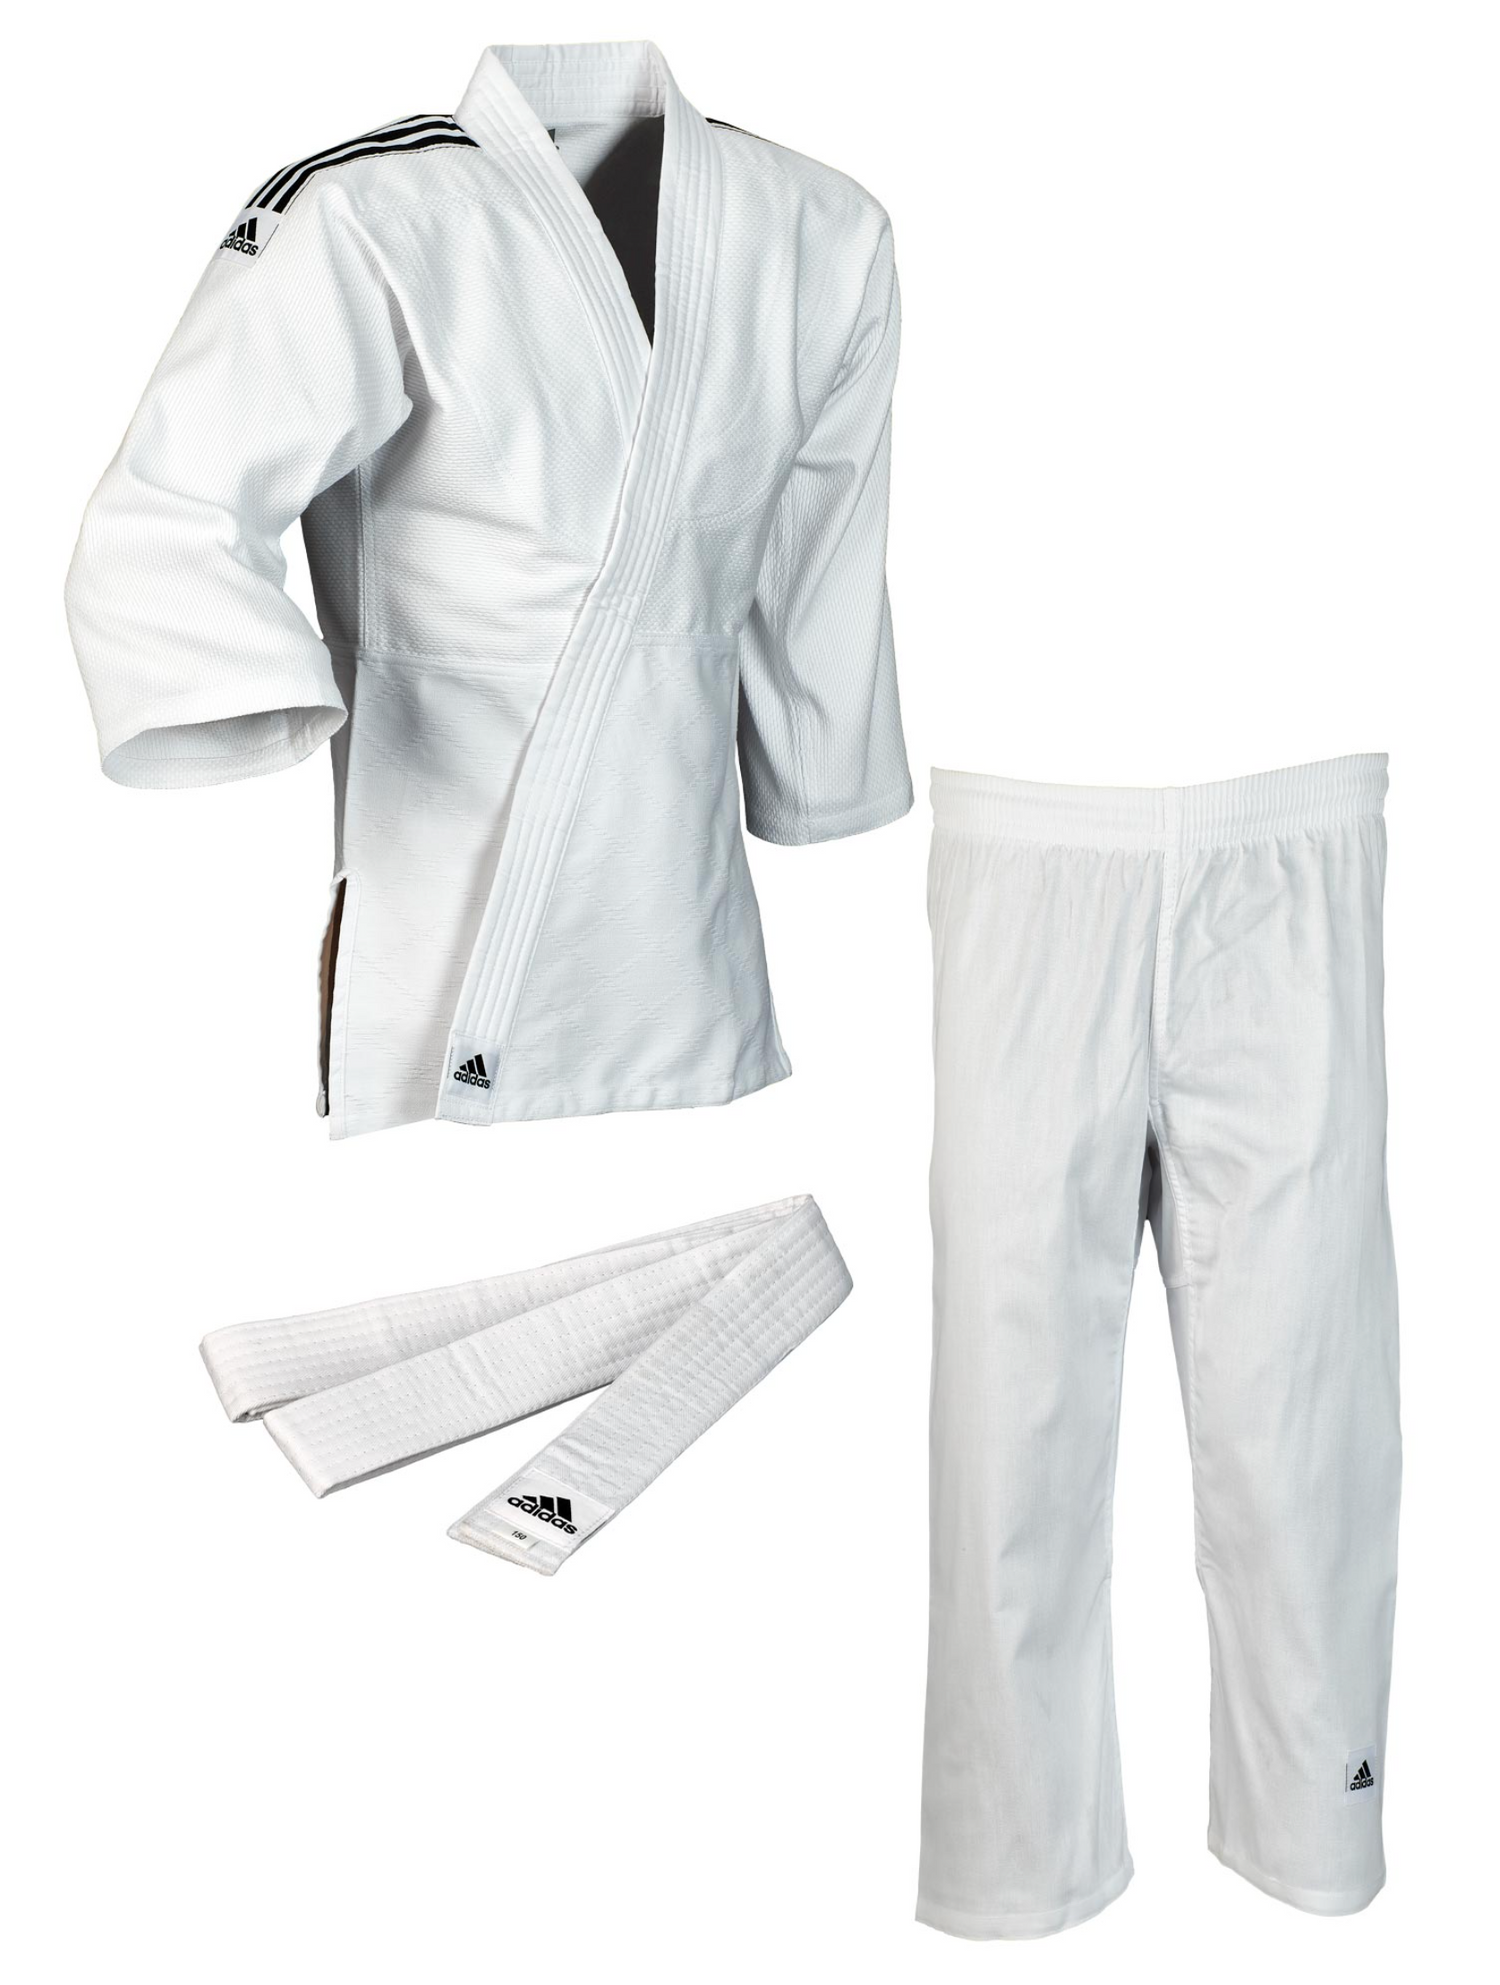 J350 Club Judo Gi - White w Black Stripes by Adidas - Budovideos Inc